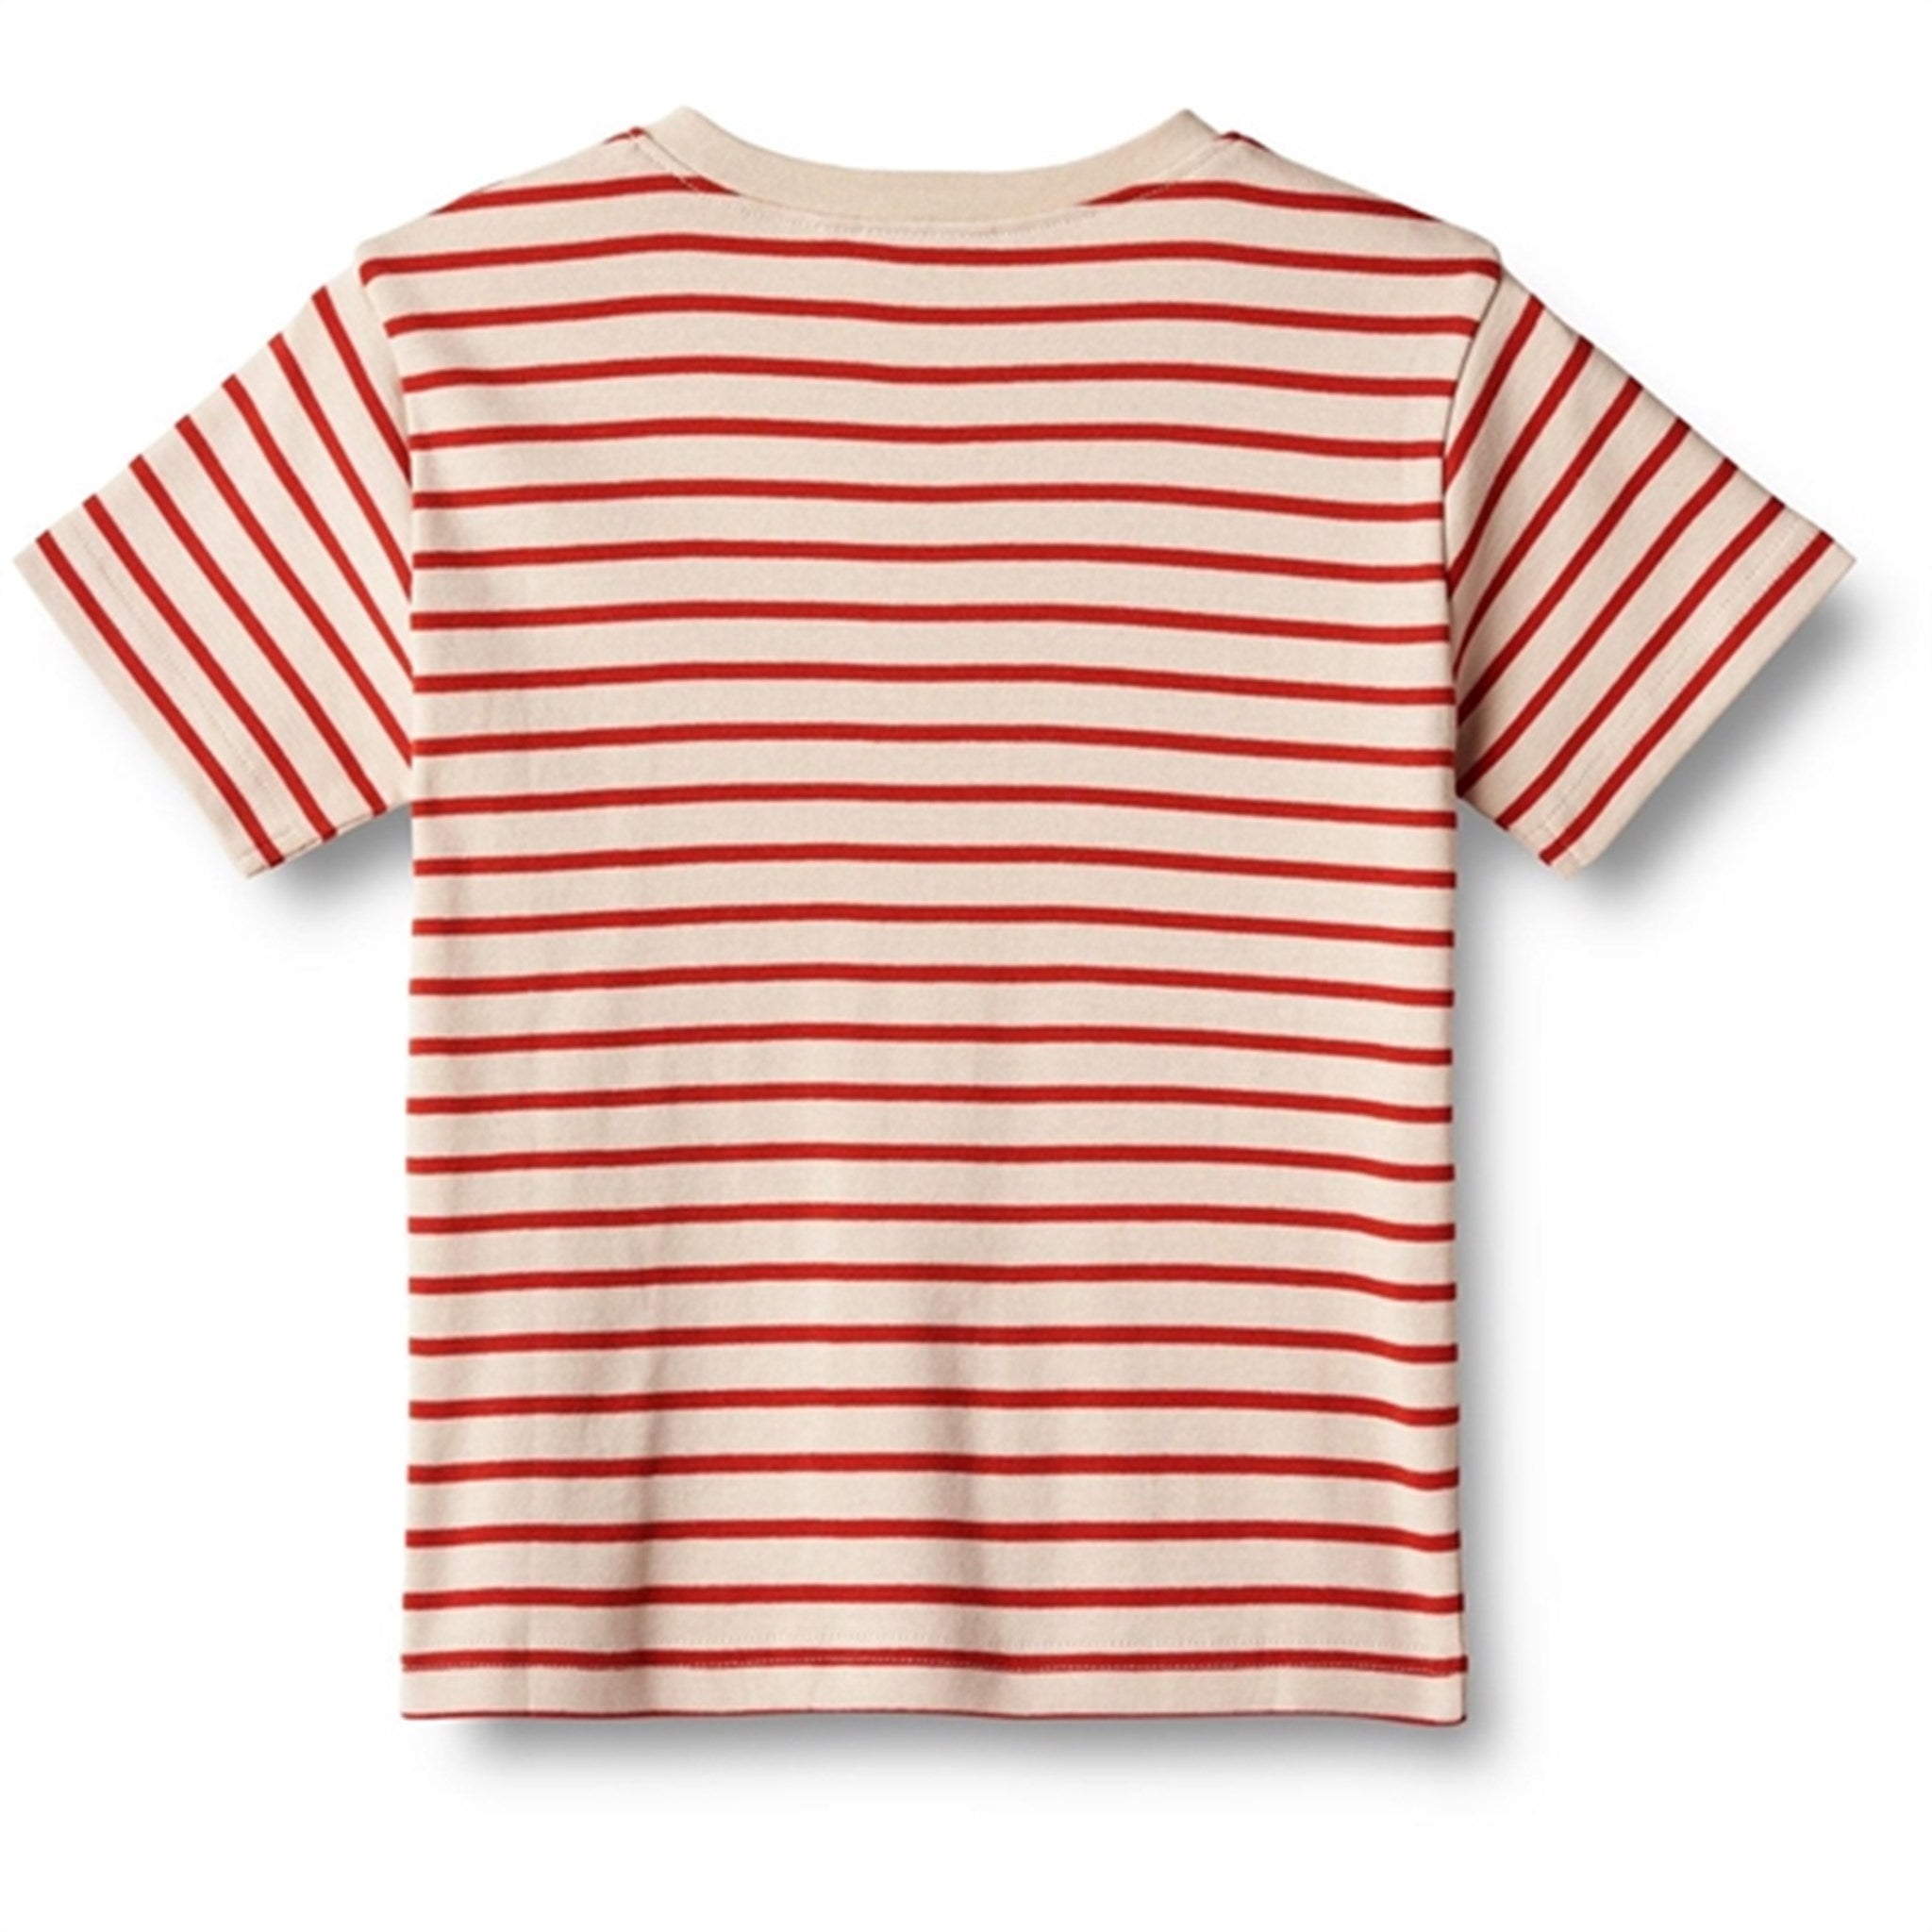 Wheat Red Stripe T-shirt Fabian 2